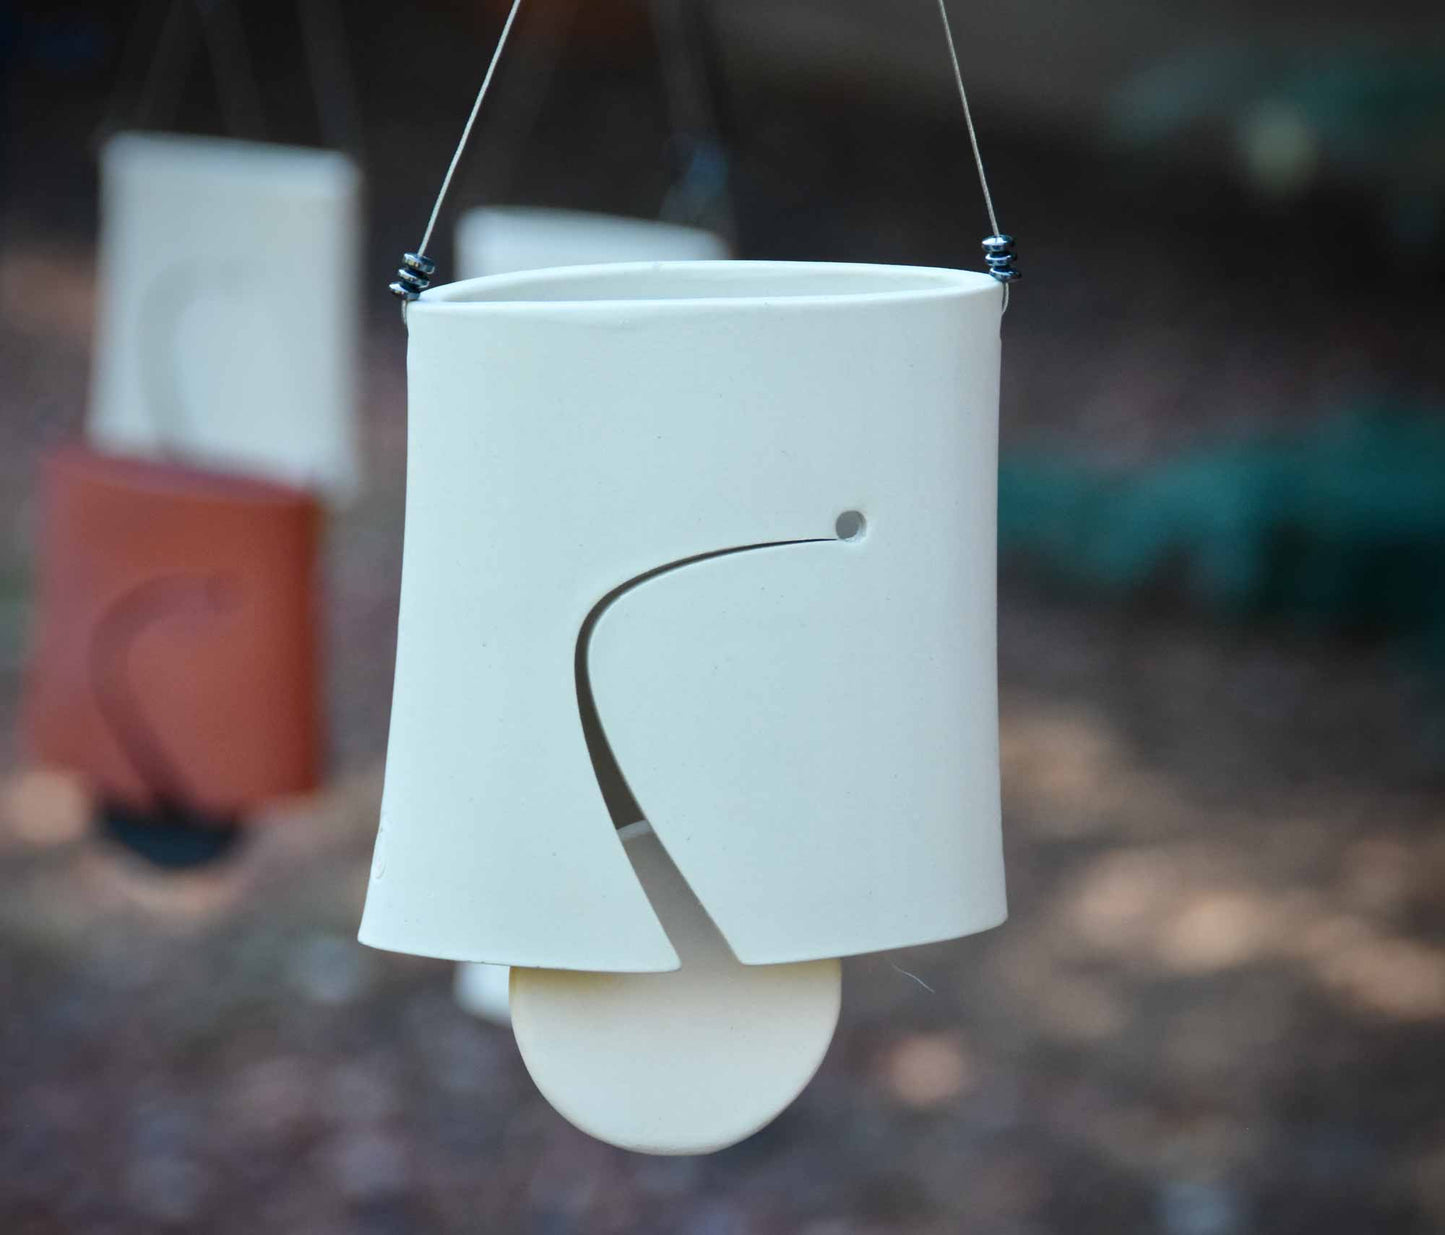 Modern Wind Bell A Unique Handmade Gift - EarthWind Bells